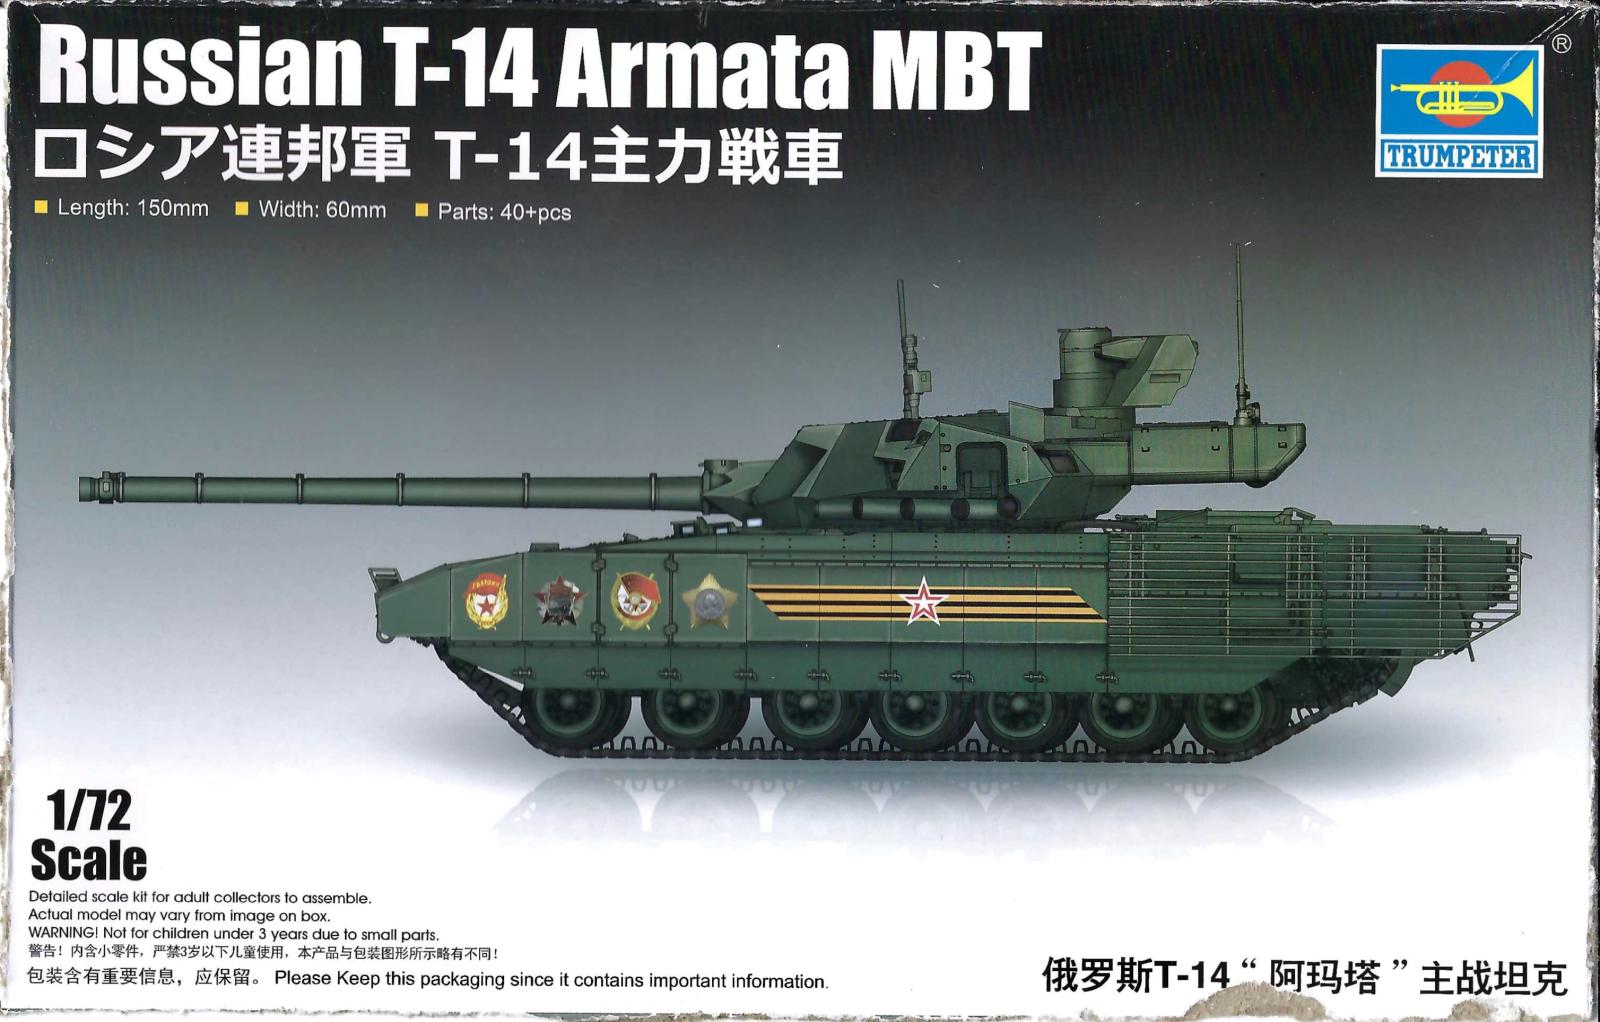 Russian T-14 Armata MBT